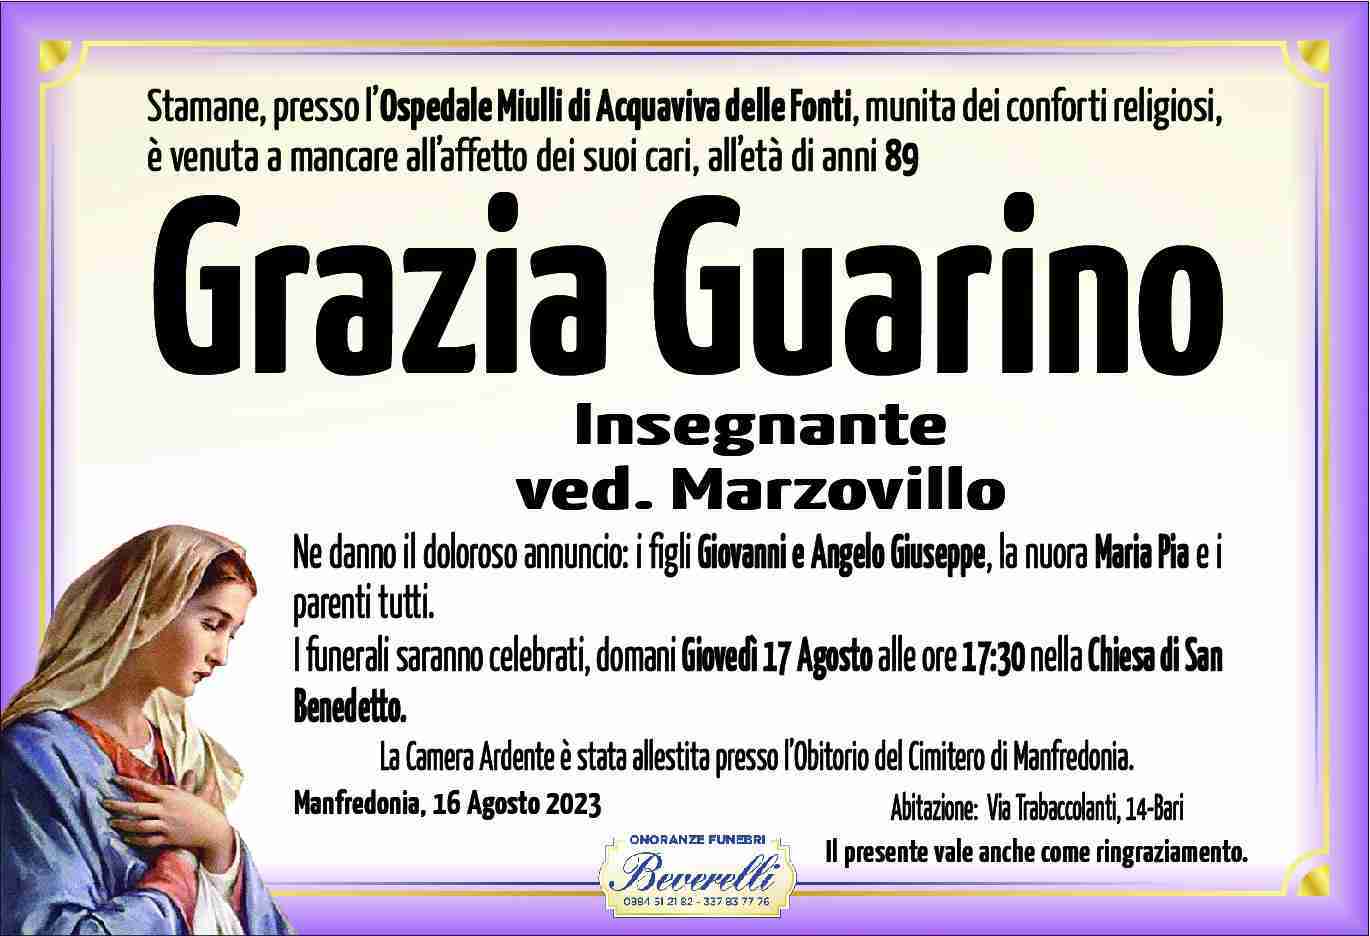 Grazia Guarino